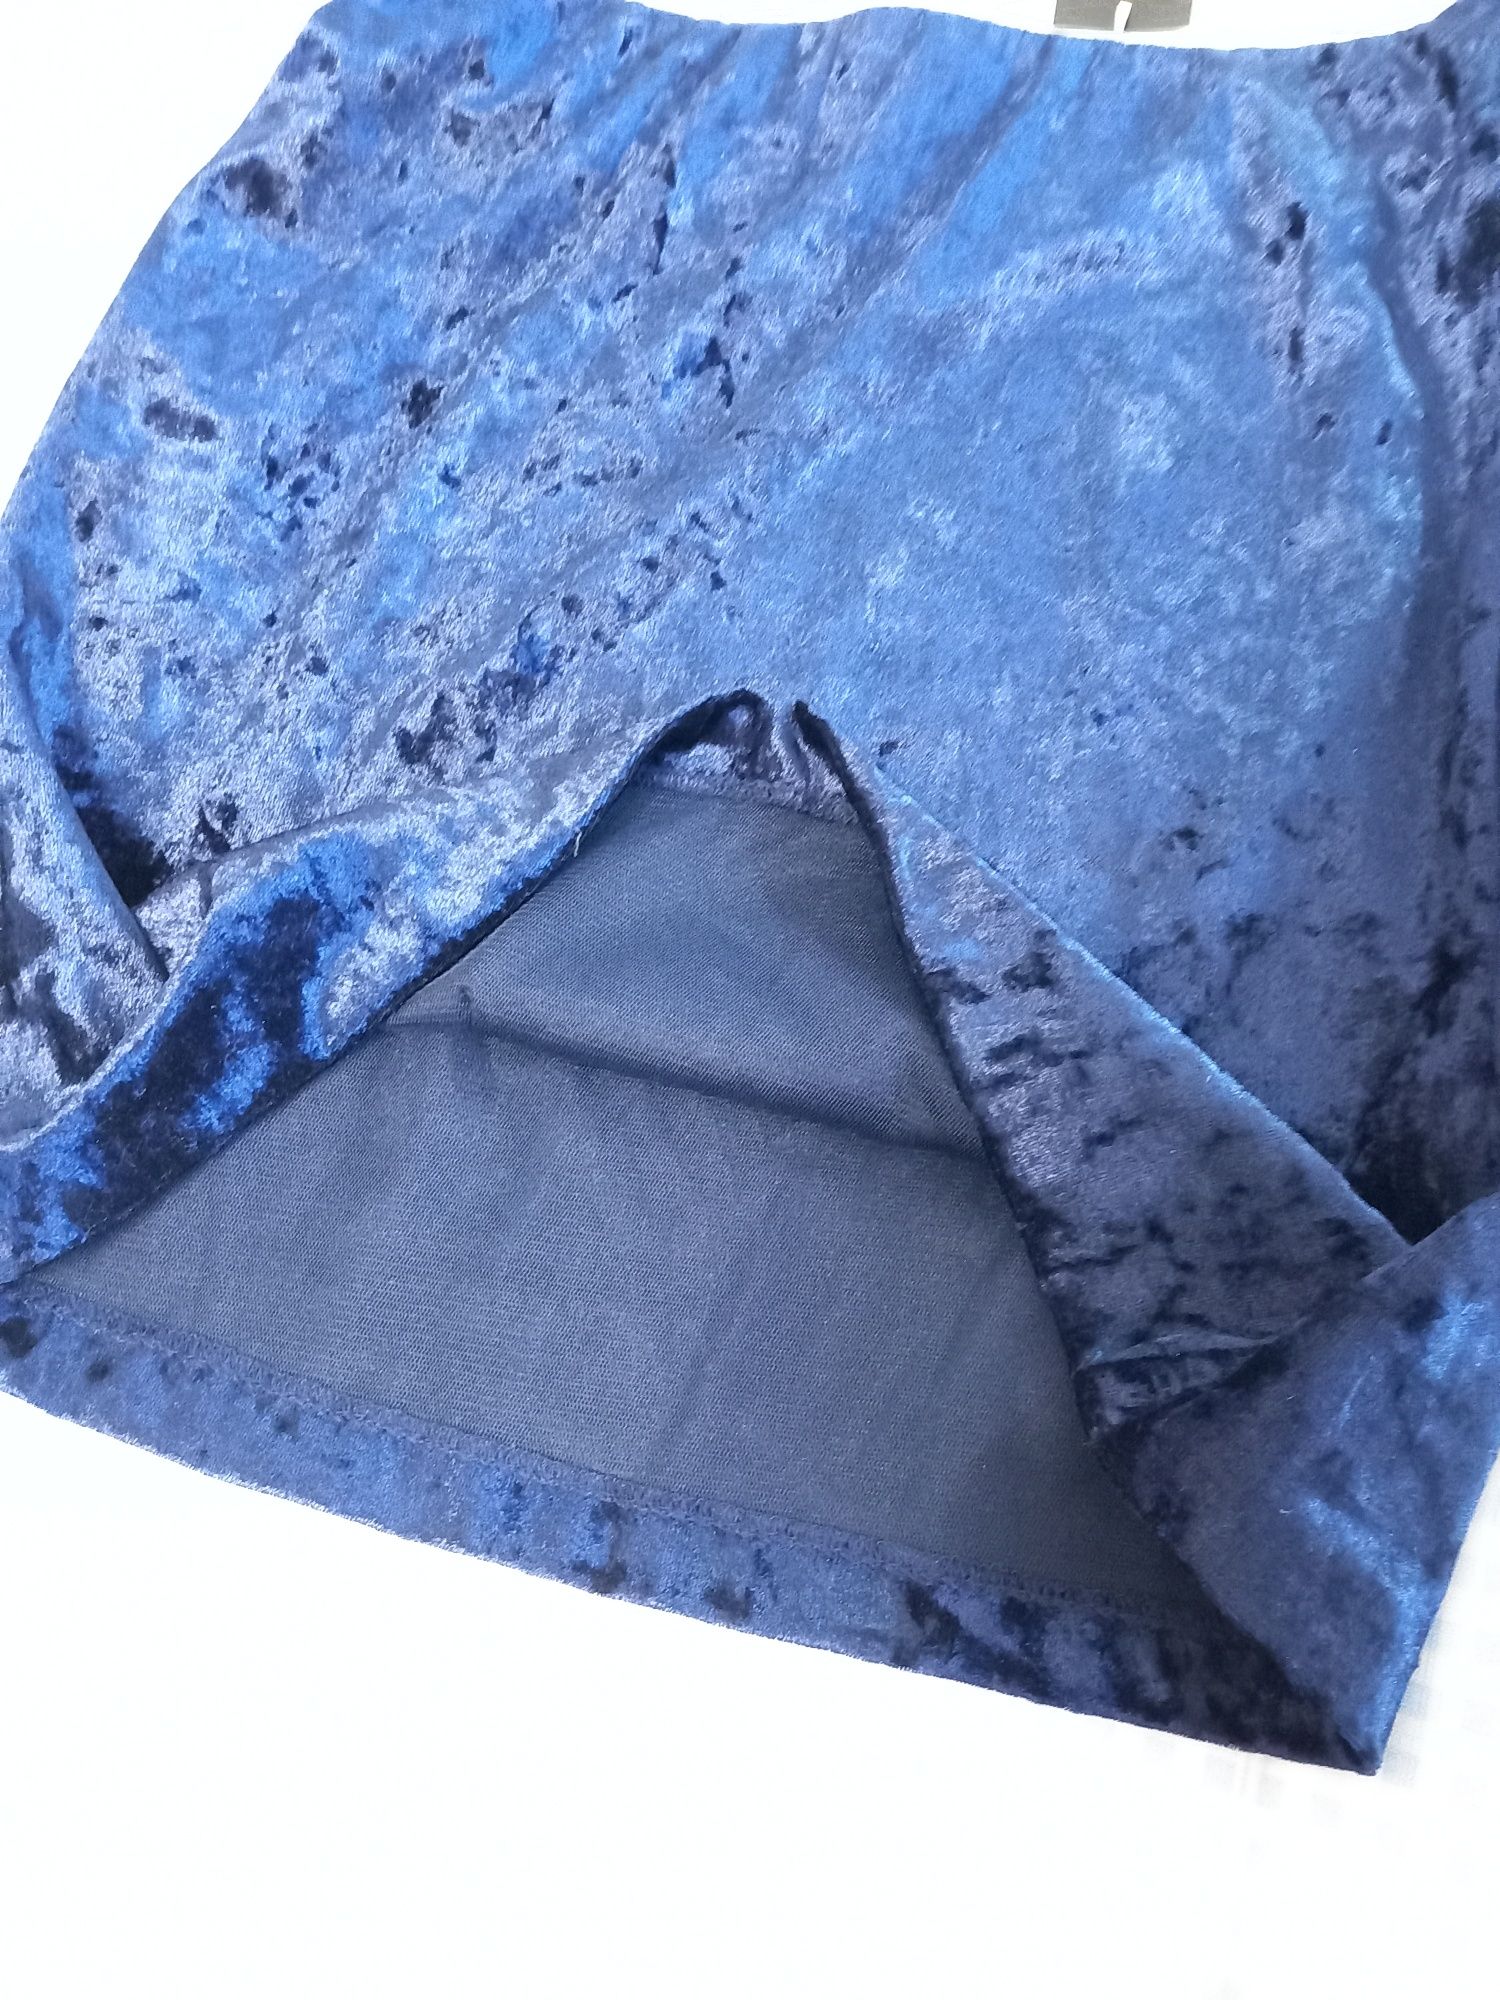 Спідниця юпка велюр синя Іспанія 36розмір (42)